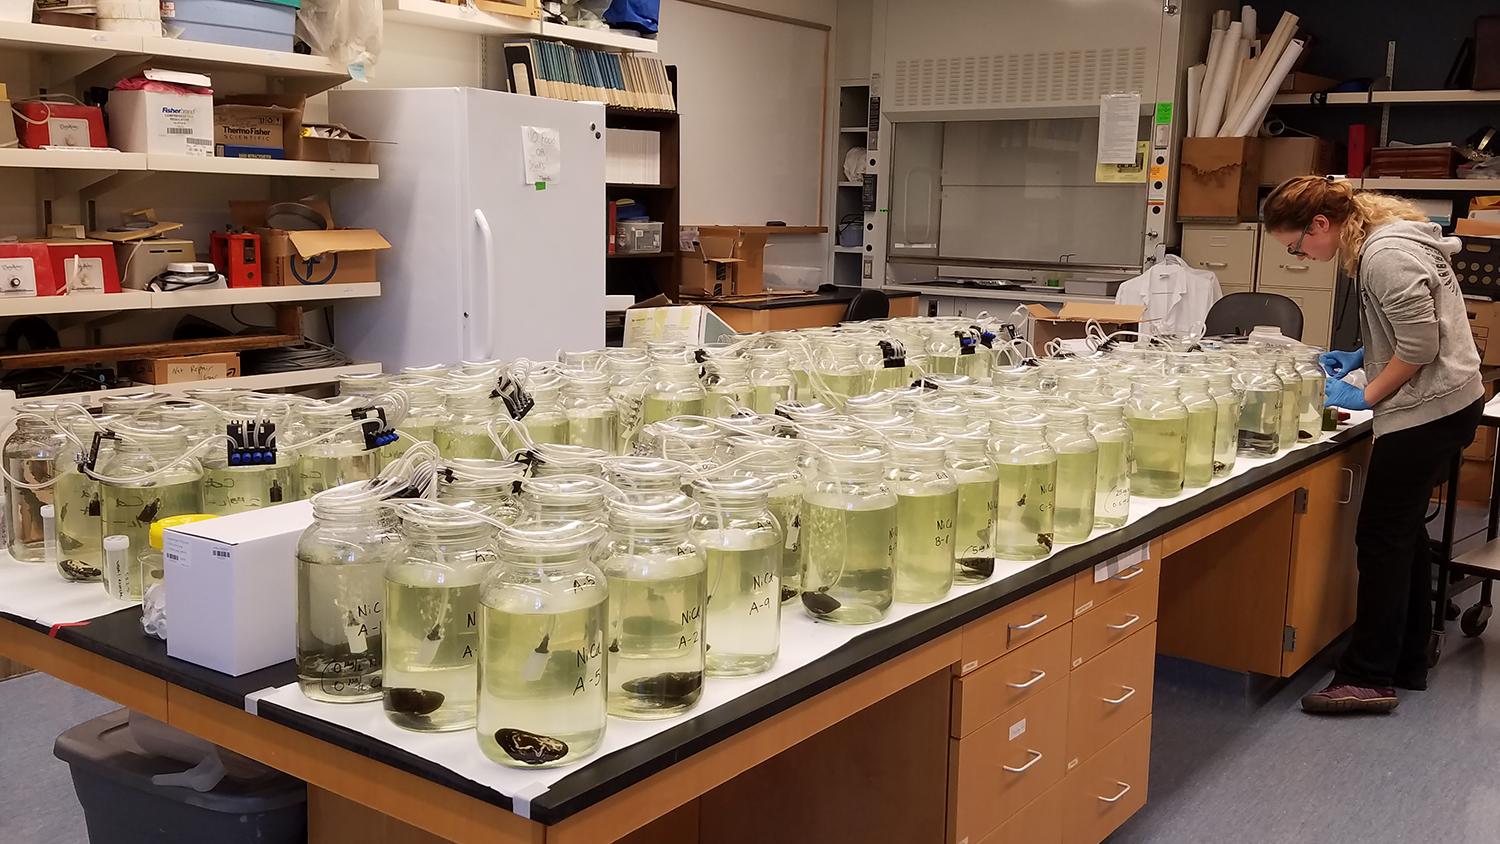 实验室中淡水贻贝的照片。